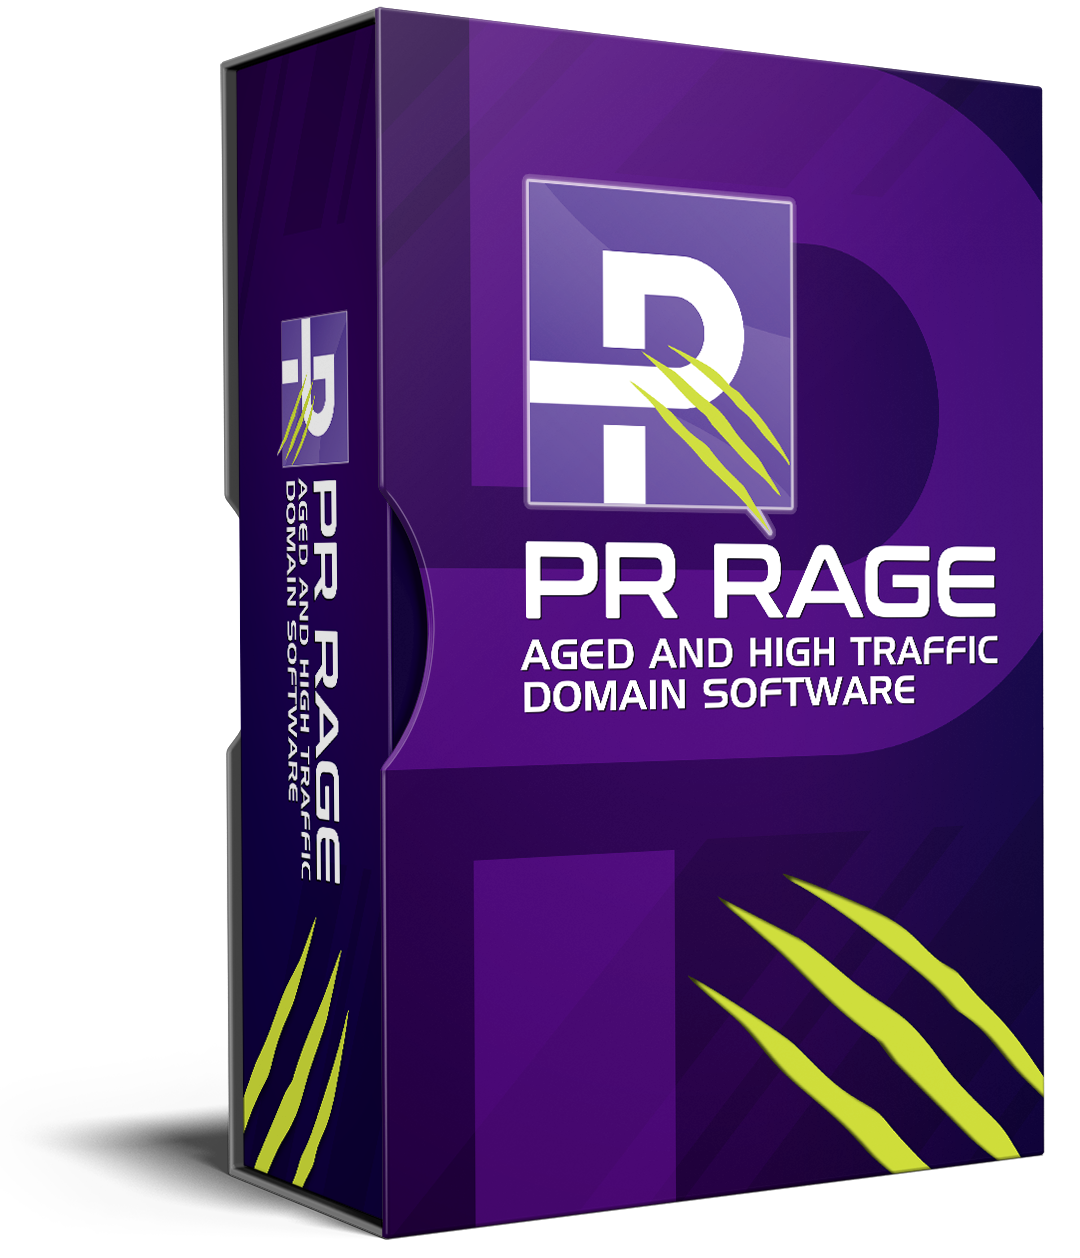 PR Rage 2.0 review